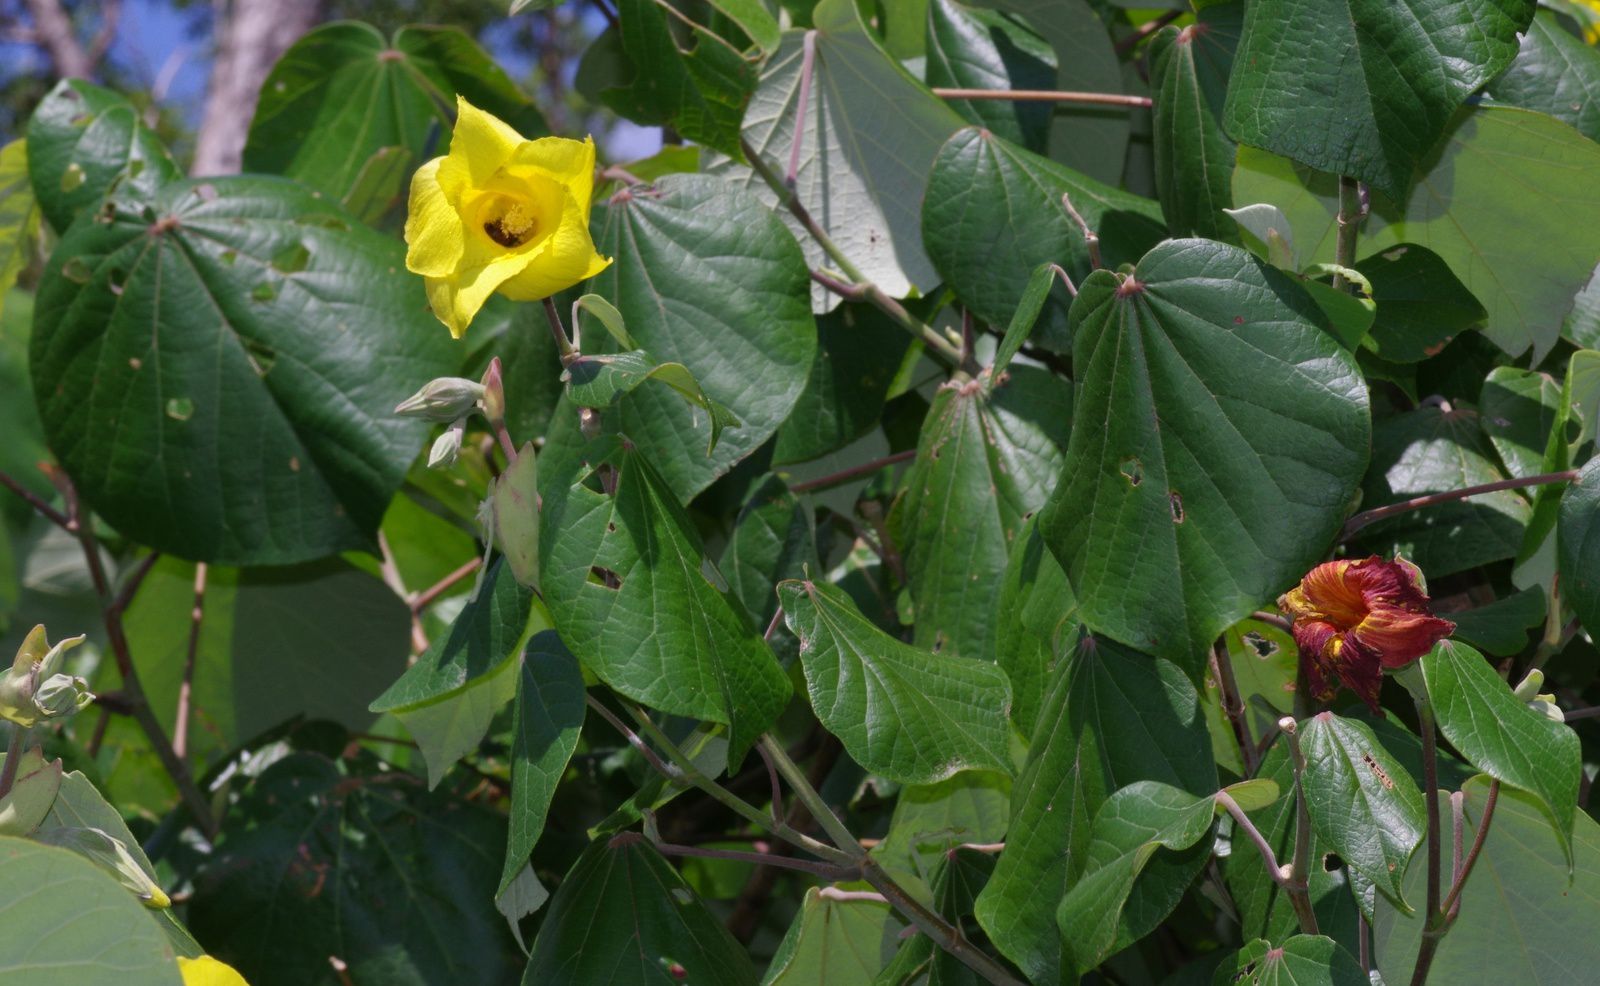 Talipariti tiliaceum (hibiscus bord de mer)